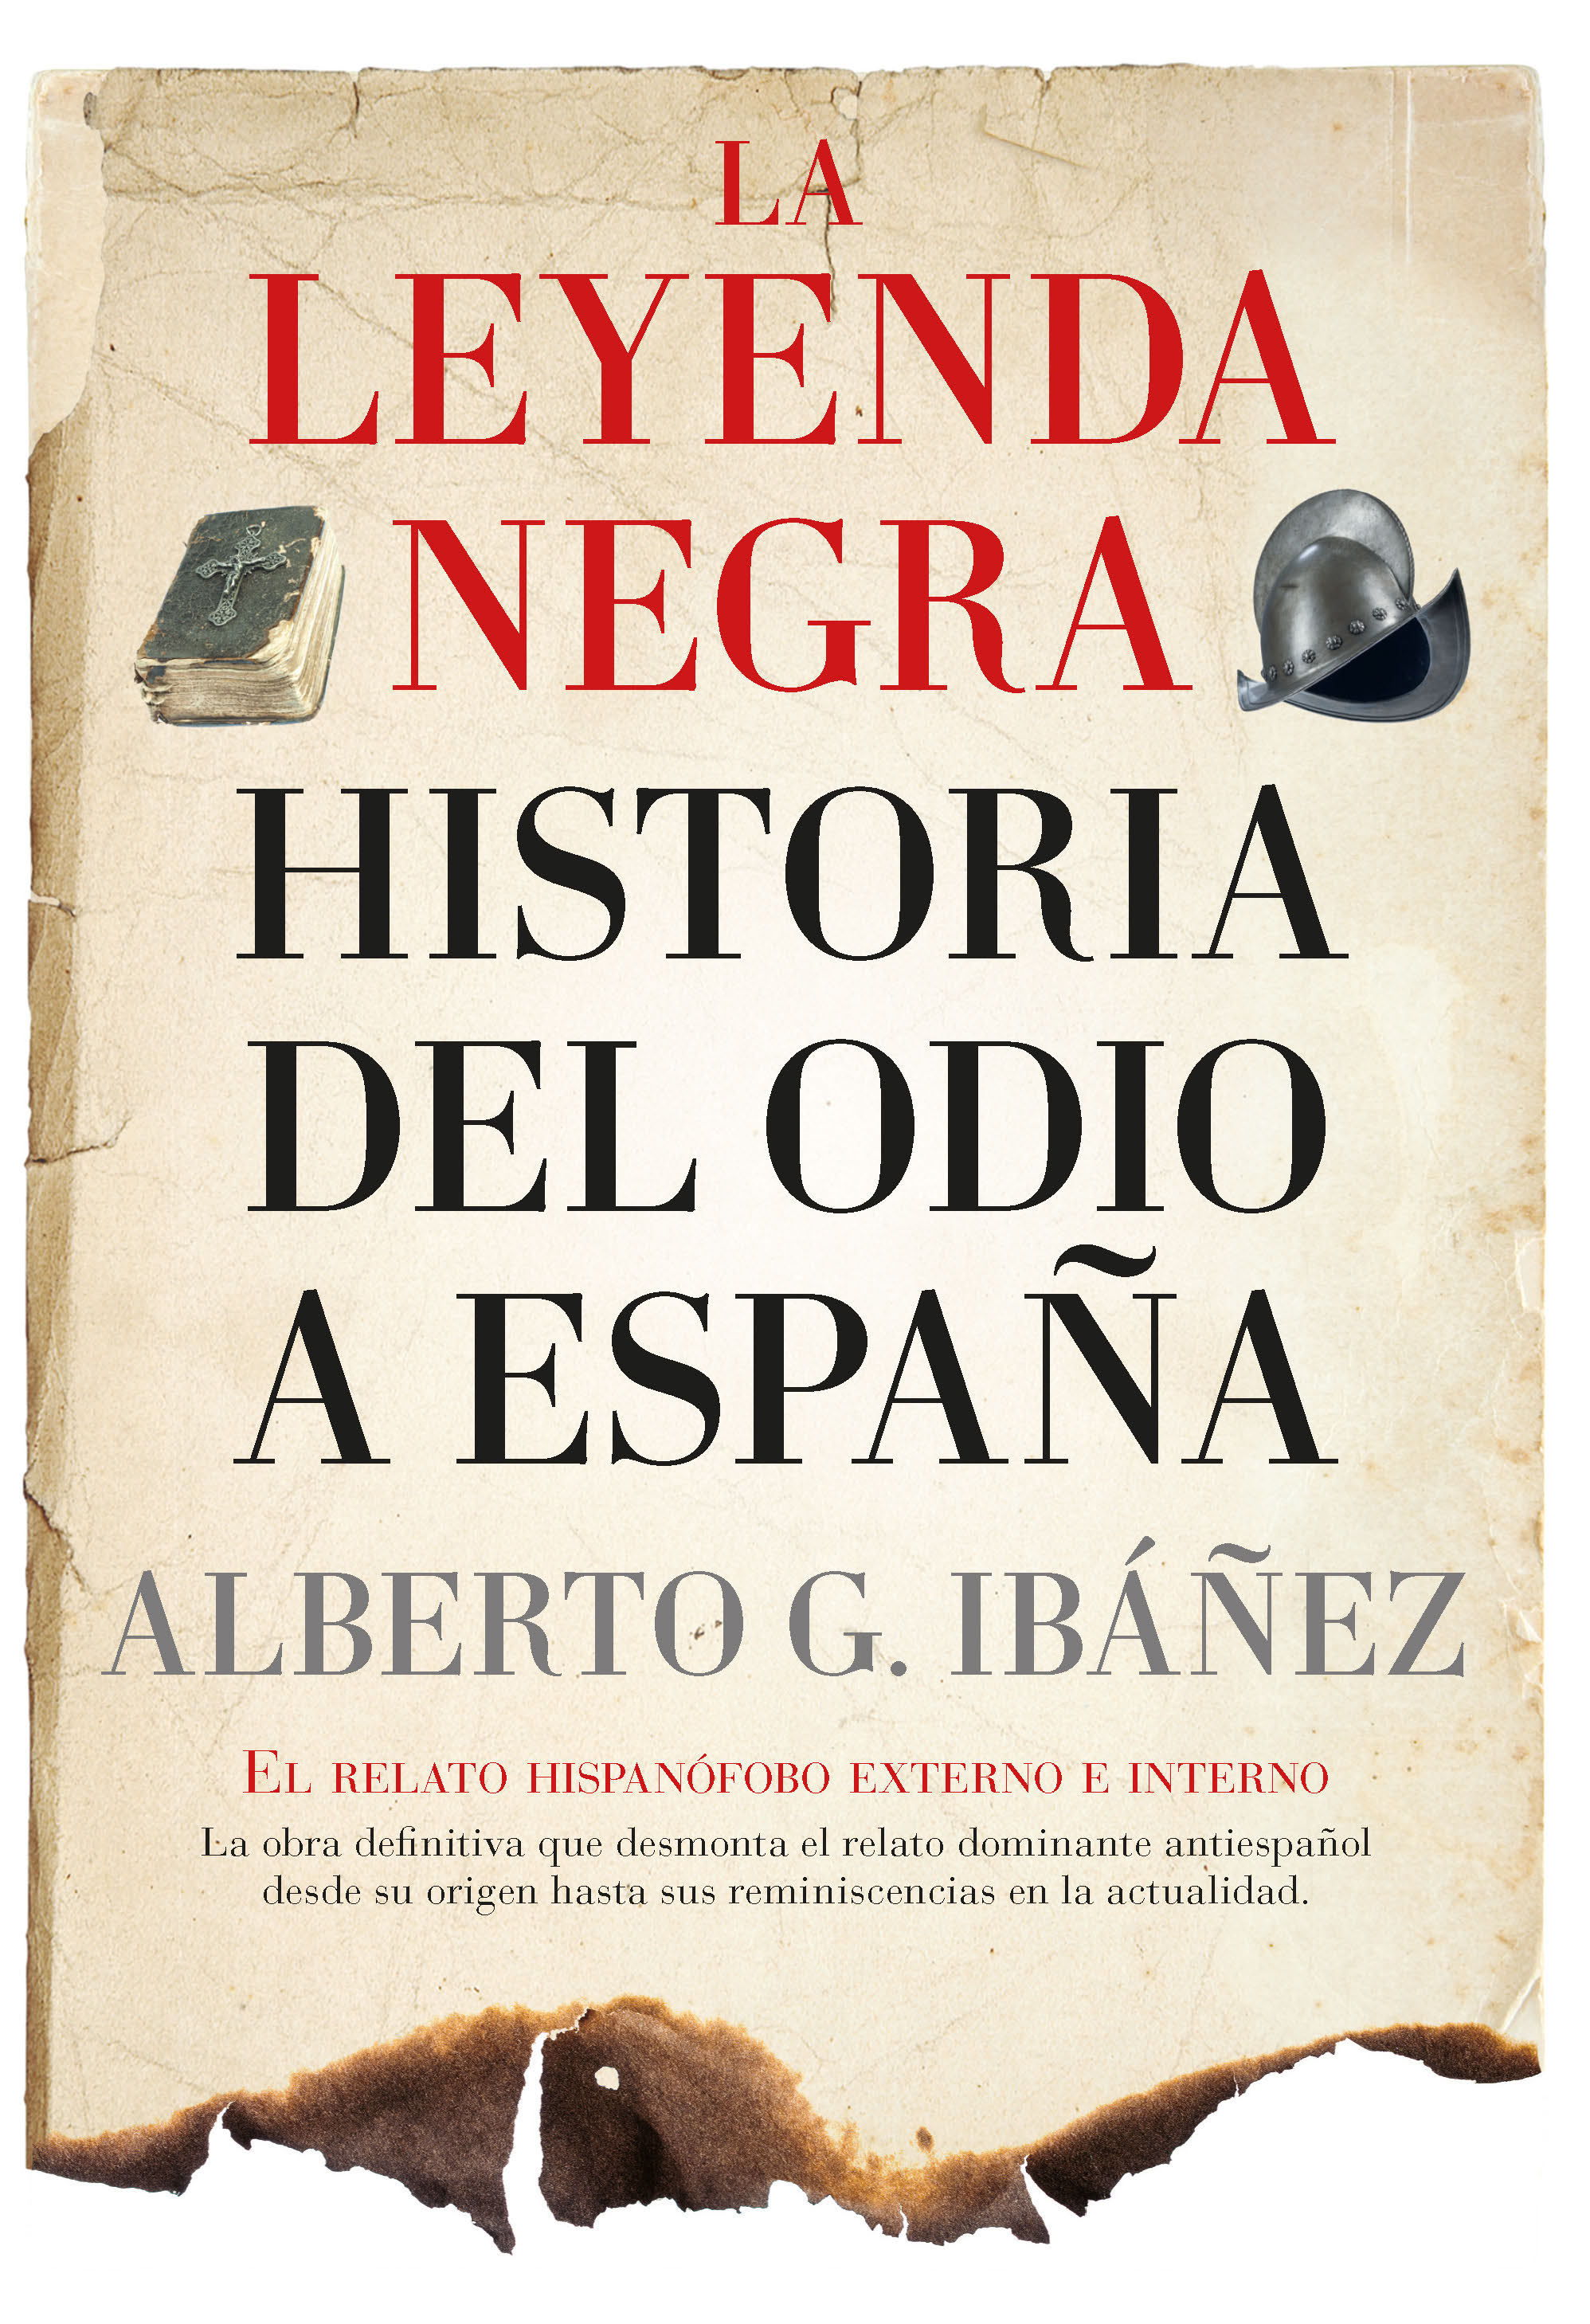 La leyenda negra: Historia del odio a España - Editorial Almuzara